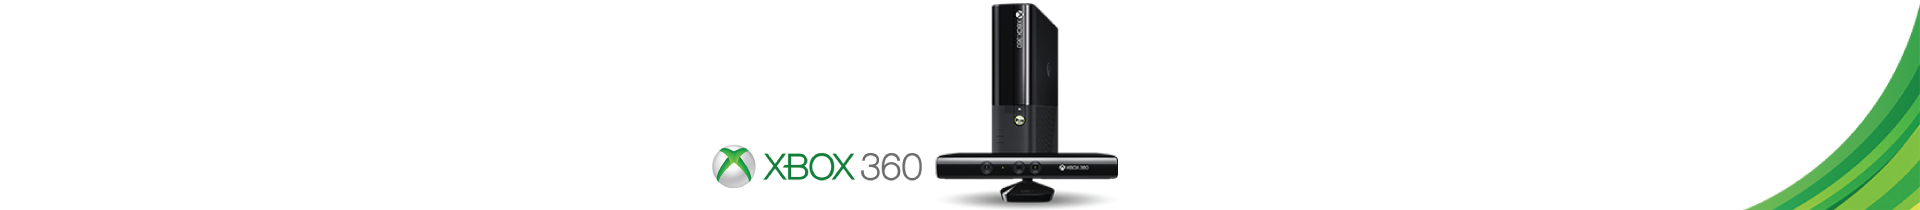 Jogos Xbox 360 | Compra no Outlet dos Videojogos | Press Start